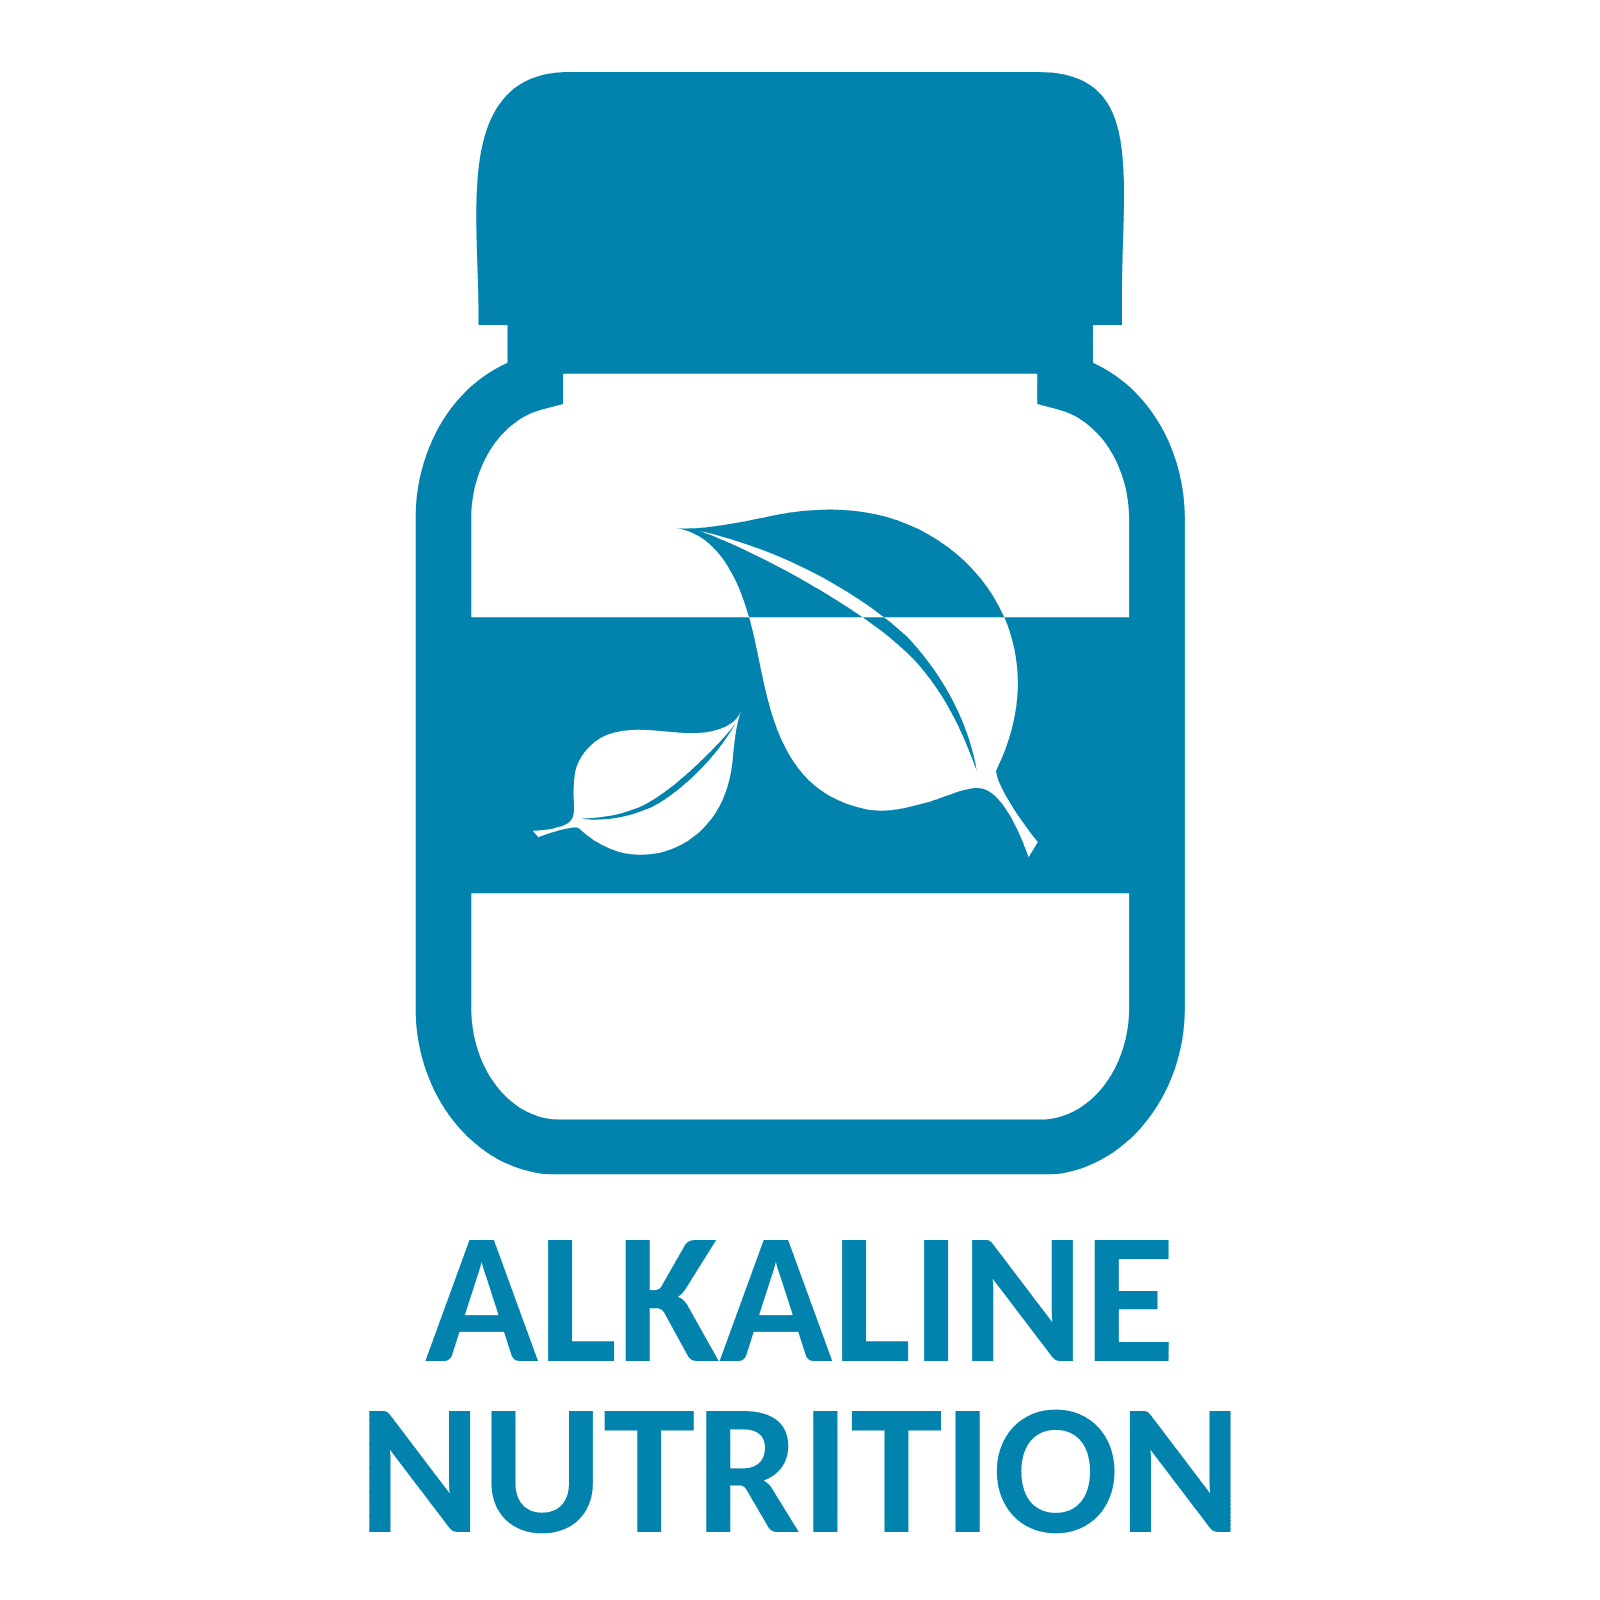 Alkaline Nutrition